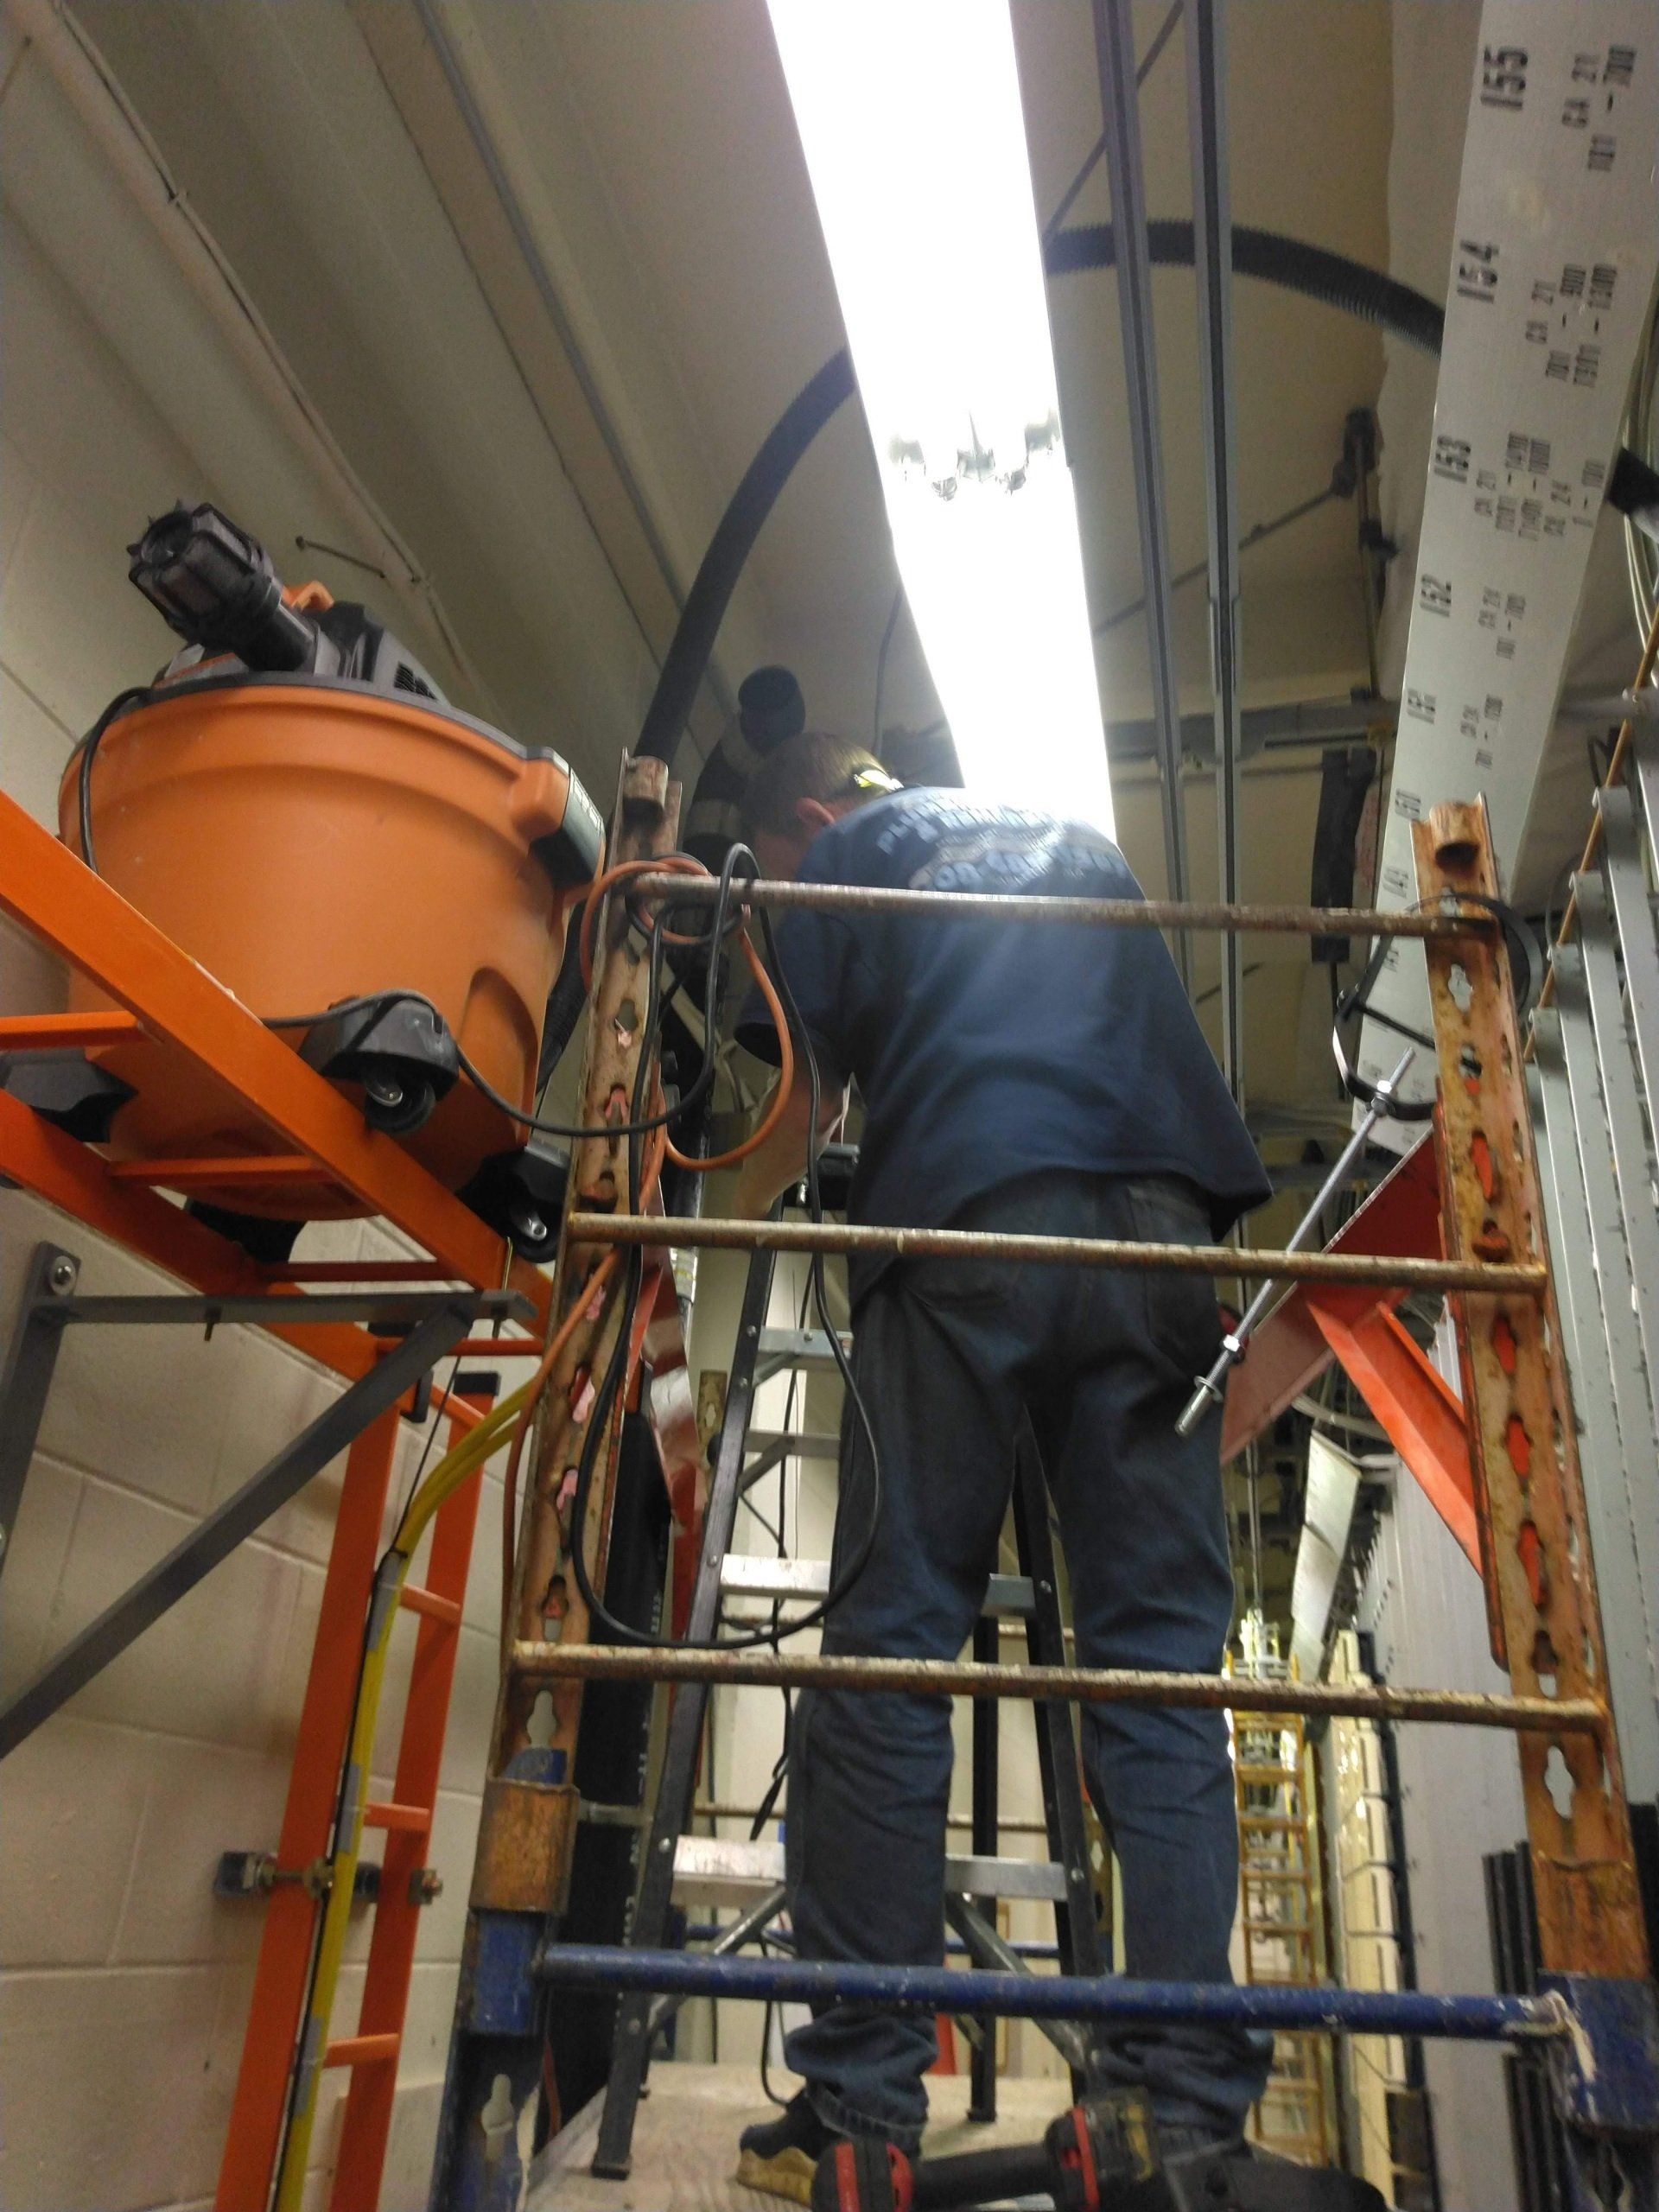 Plumber Fixing the Kitchen Sink — Marlborough MA  — Bob Dolan Plumbing, Heating & Remodeling